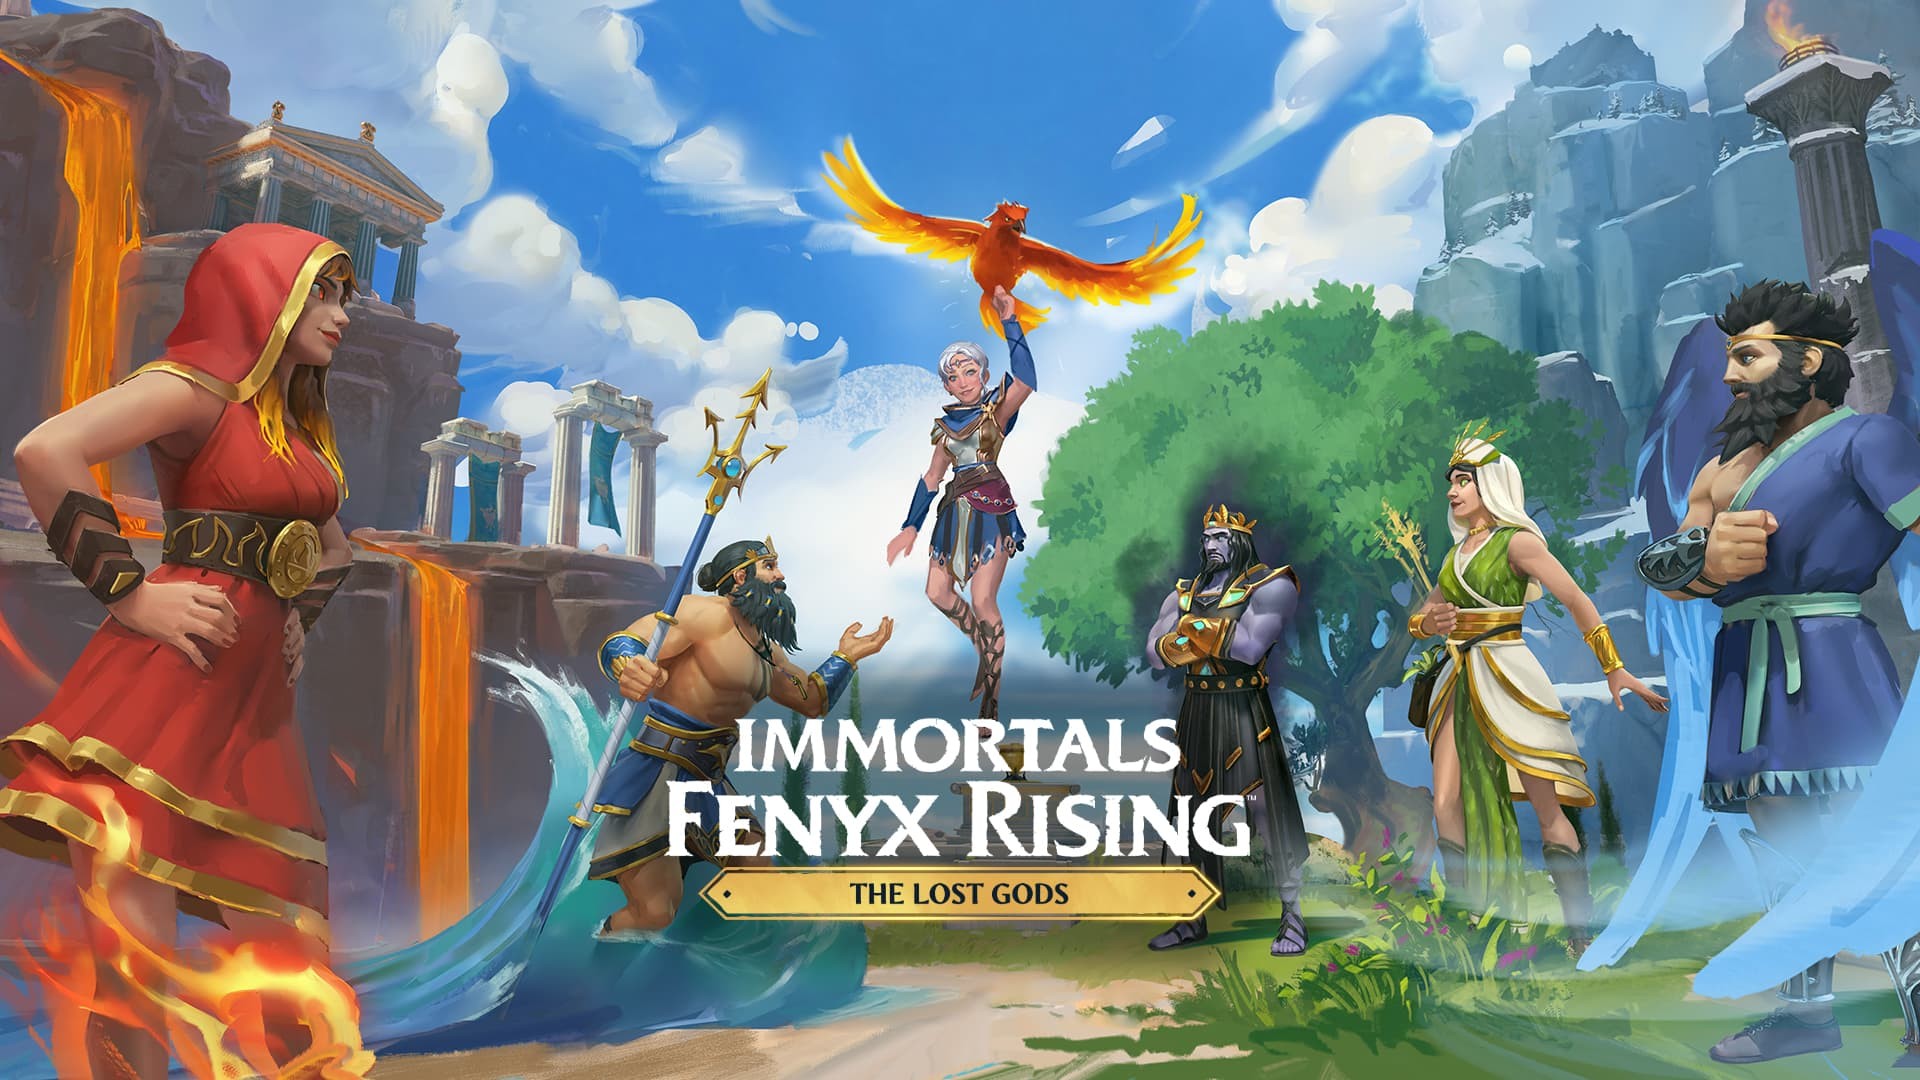 Immortals Fenyx Rising The Lost Gods